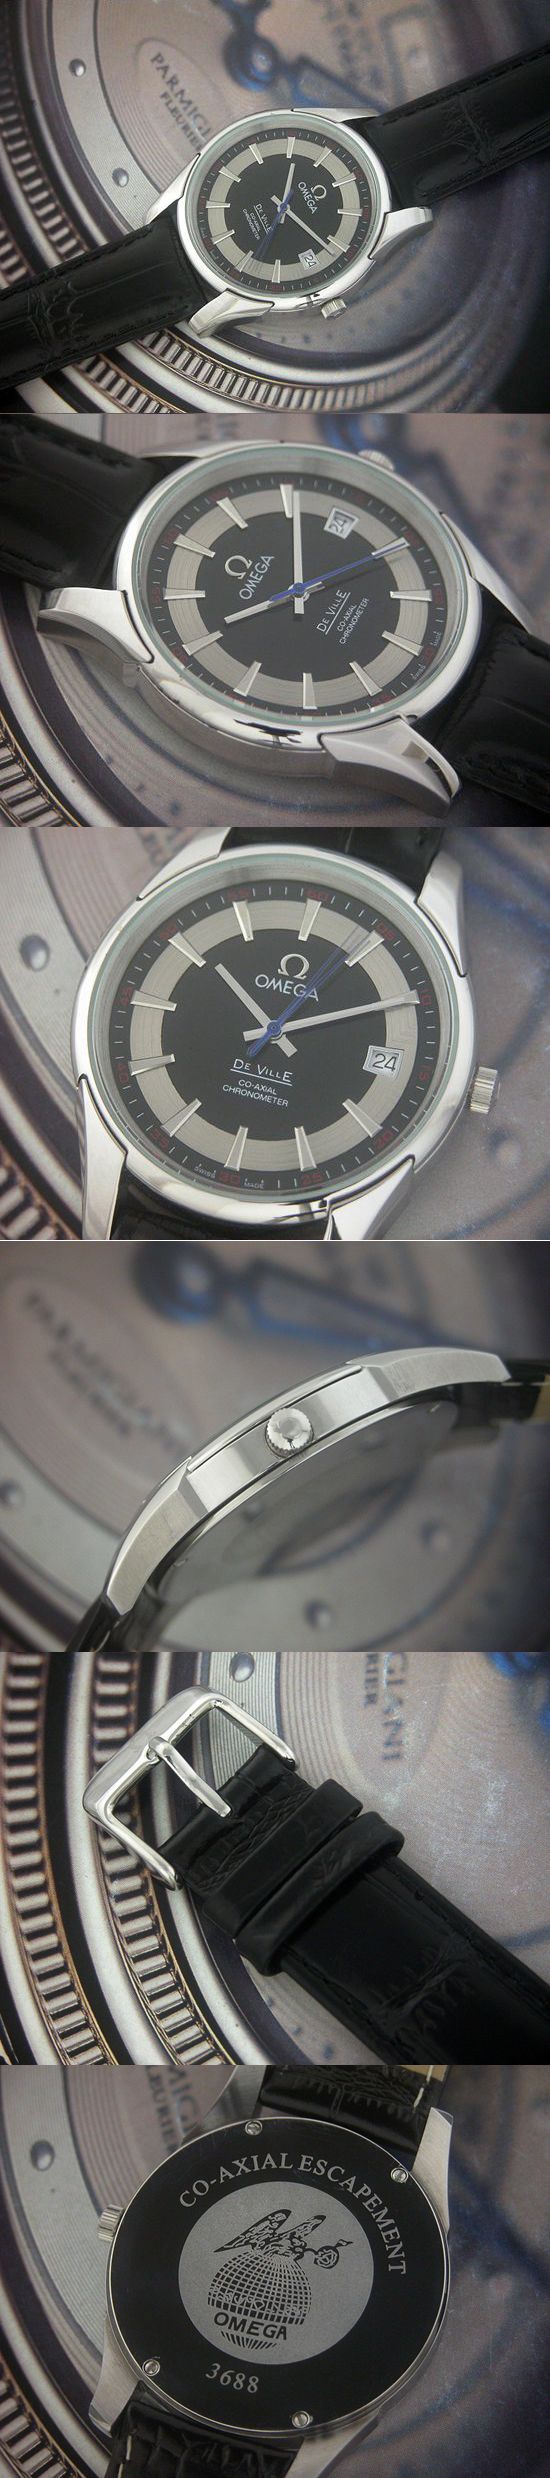 おしゃれなブランド時計がオメガ-デビル-OMEGA-431.33.41.21.01.001-ac-男性用を提供します.